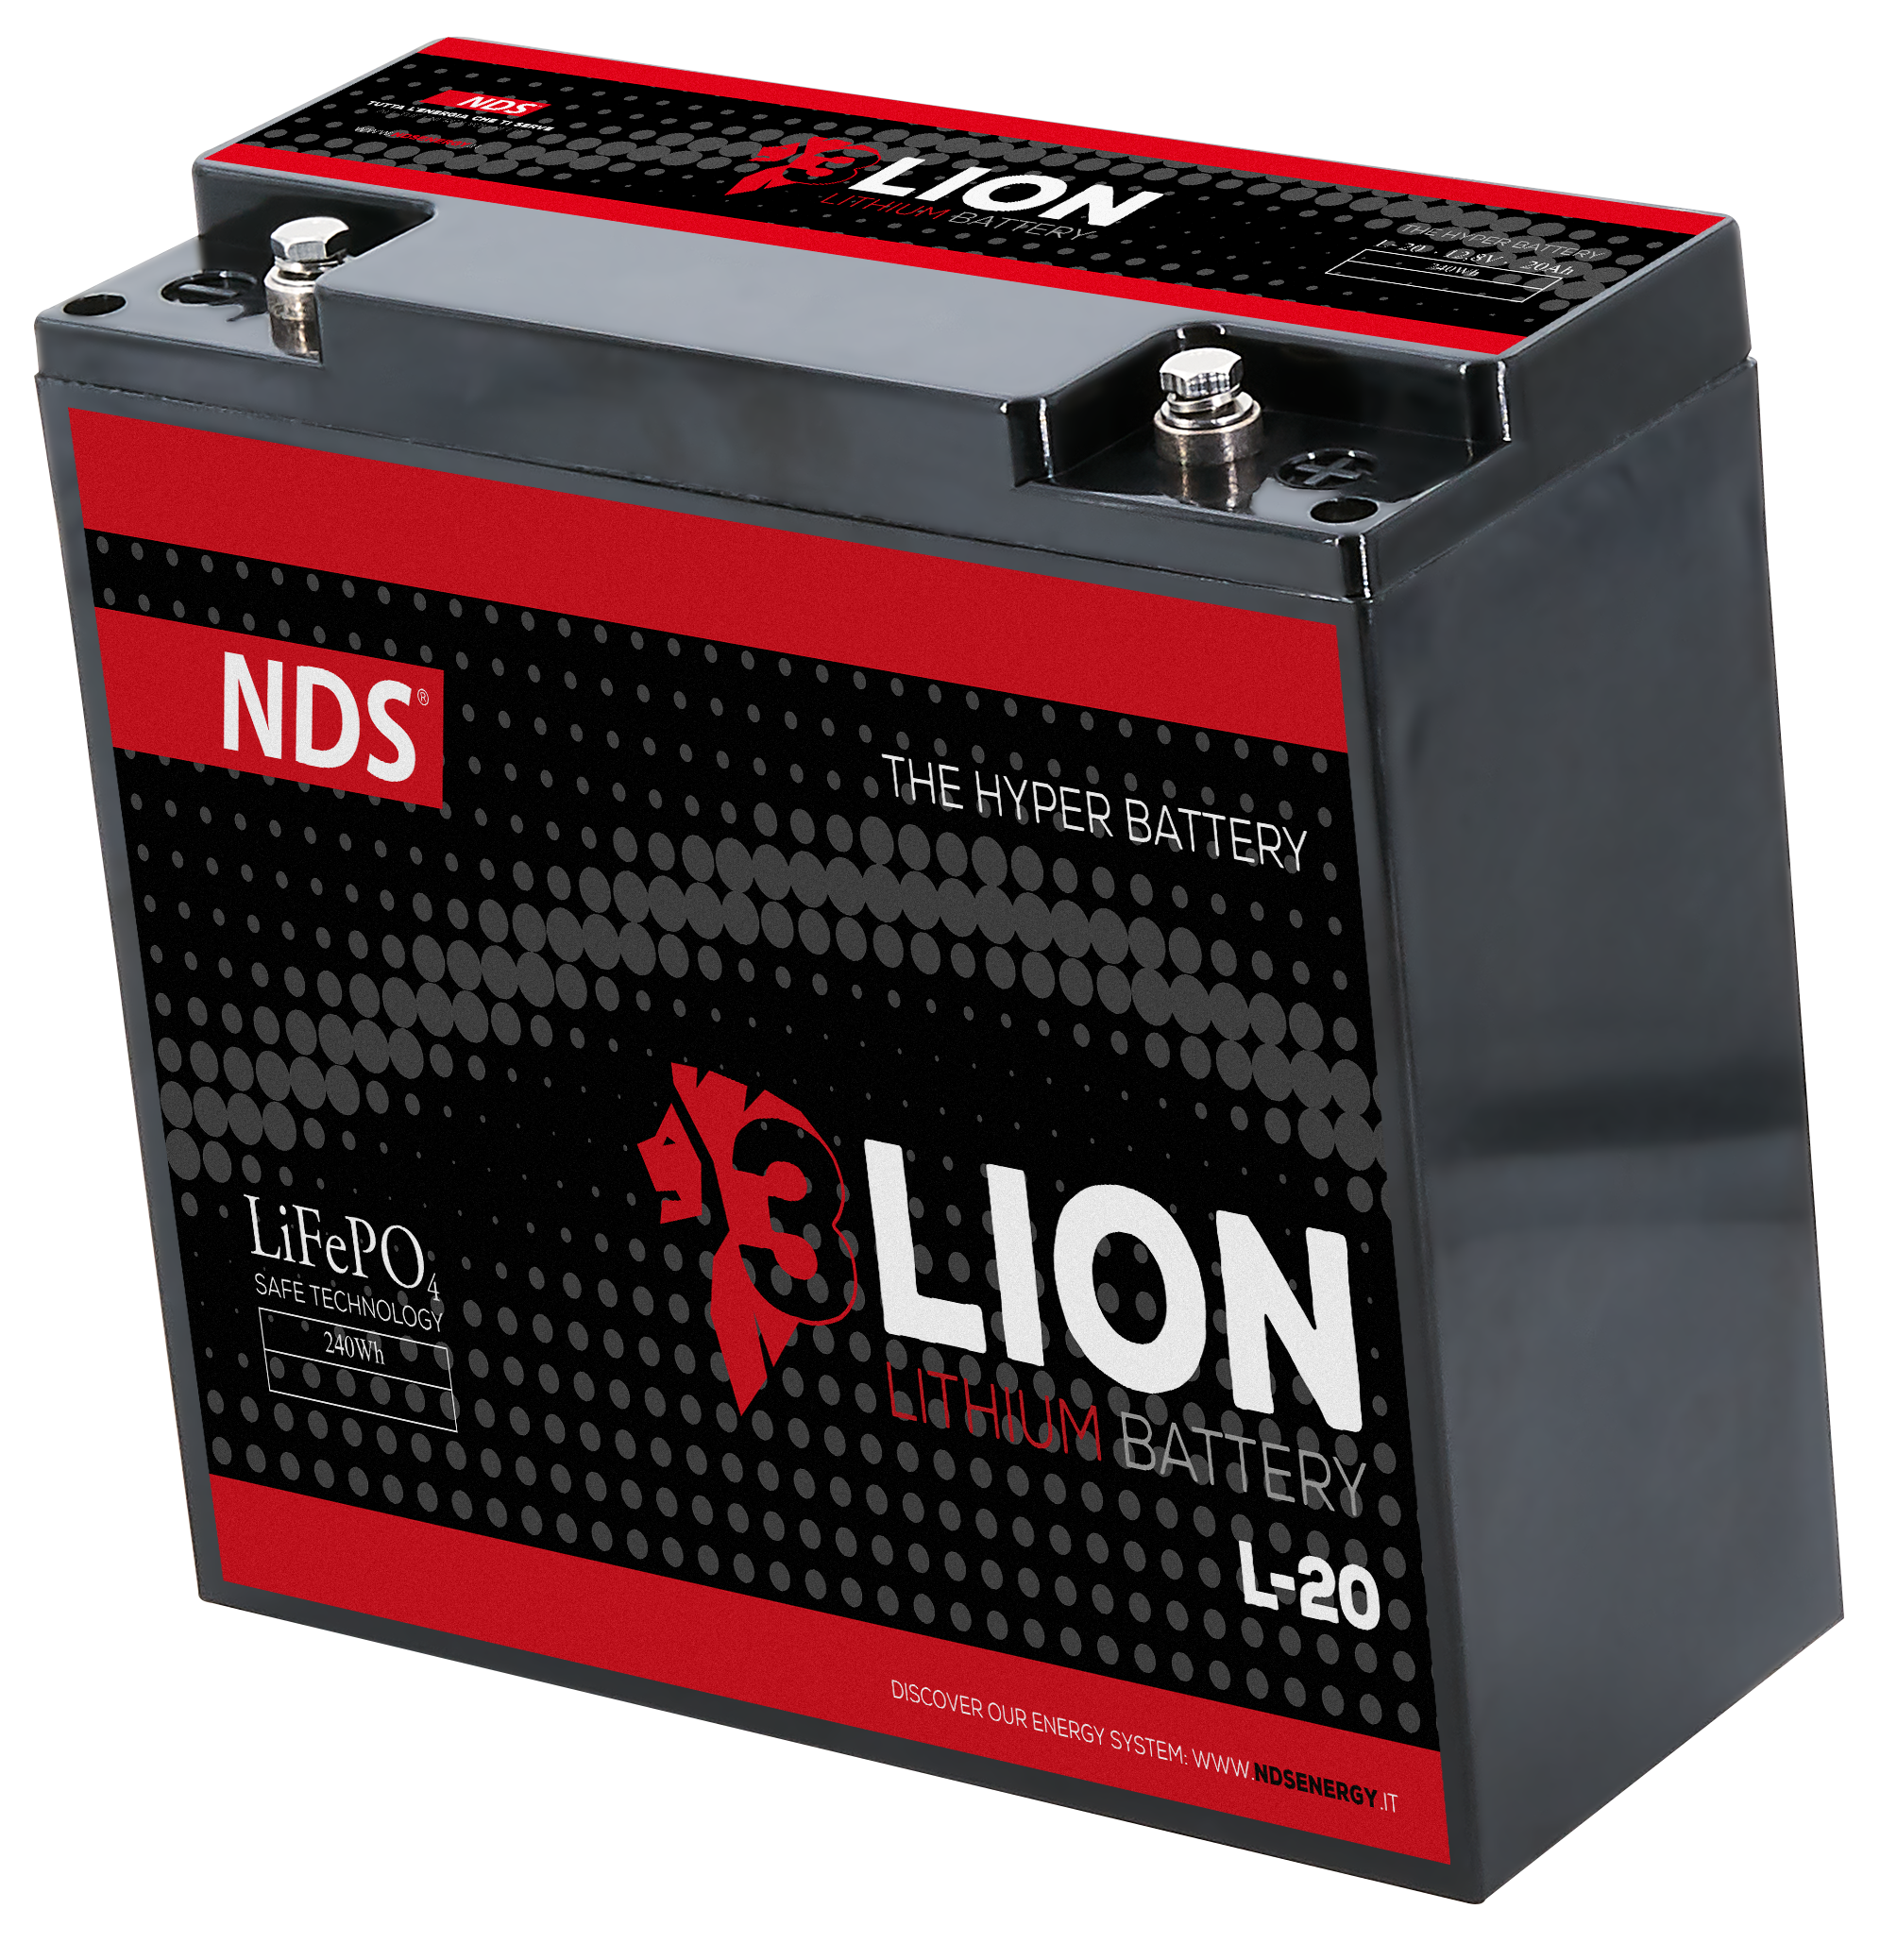 Batterie Lithium 3 Lion - 20 Ah - 3LION - batterie Lithium